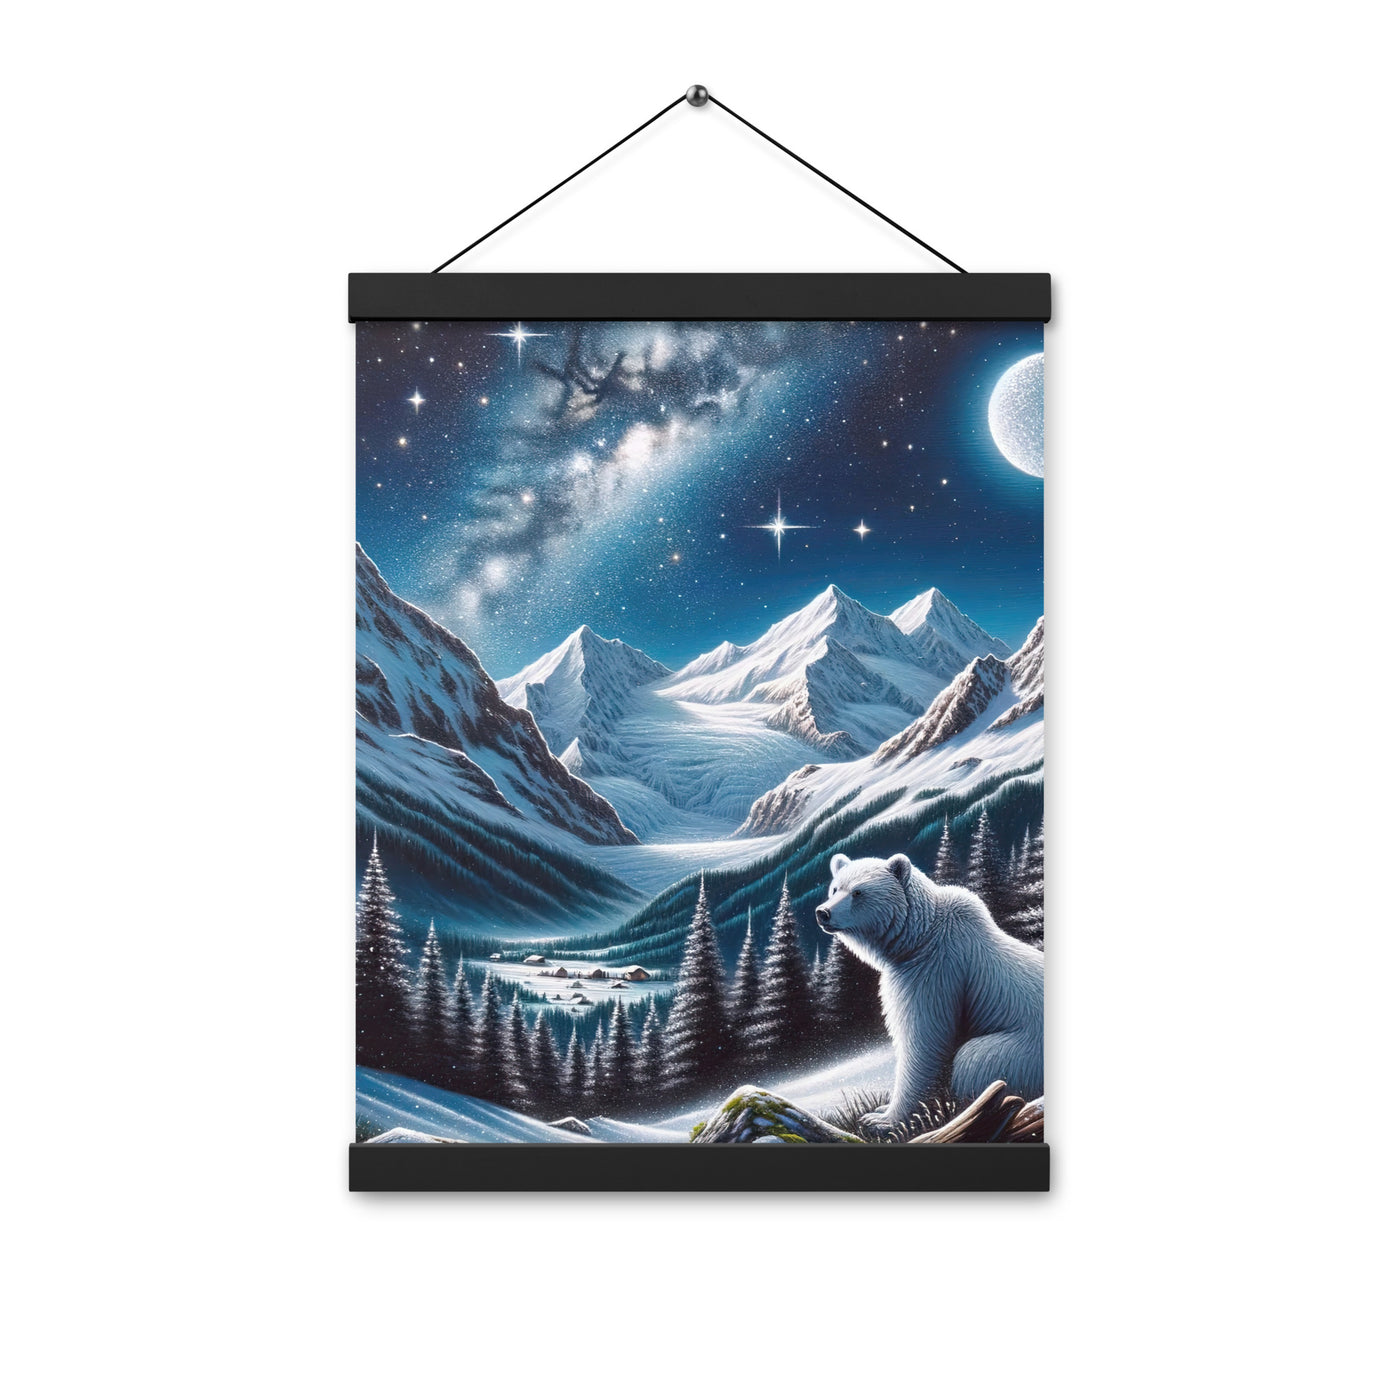 Sternennacht und Eisbär: Acrylgemälde mit Milchstraße, Alpen und schneebedeckte Gipfel - Premium Poster mit Aufhängung camping xxx yyy zzz 30.5 x 40.6 cm